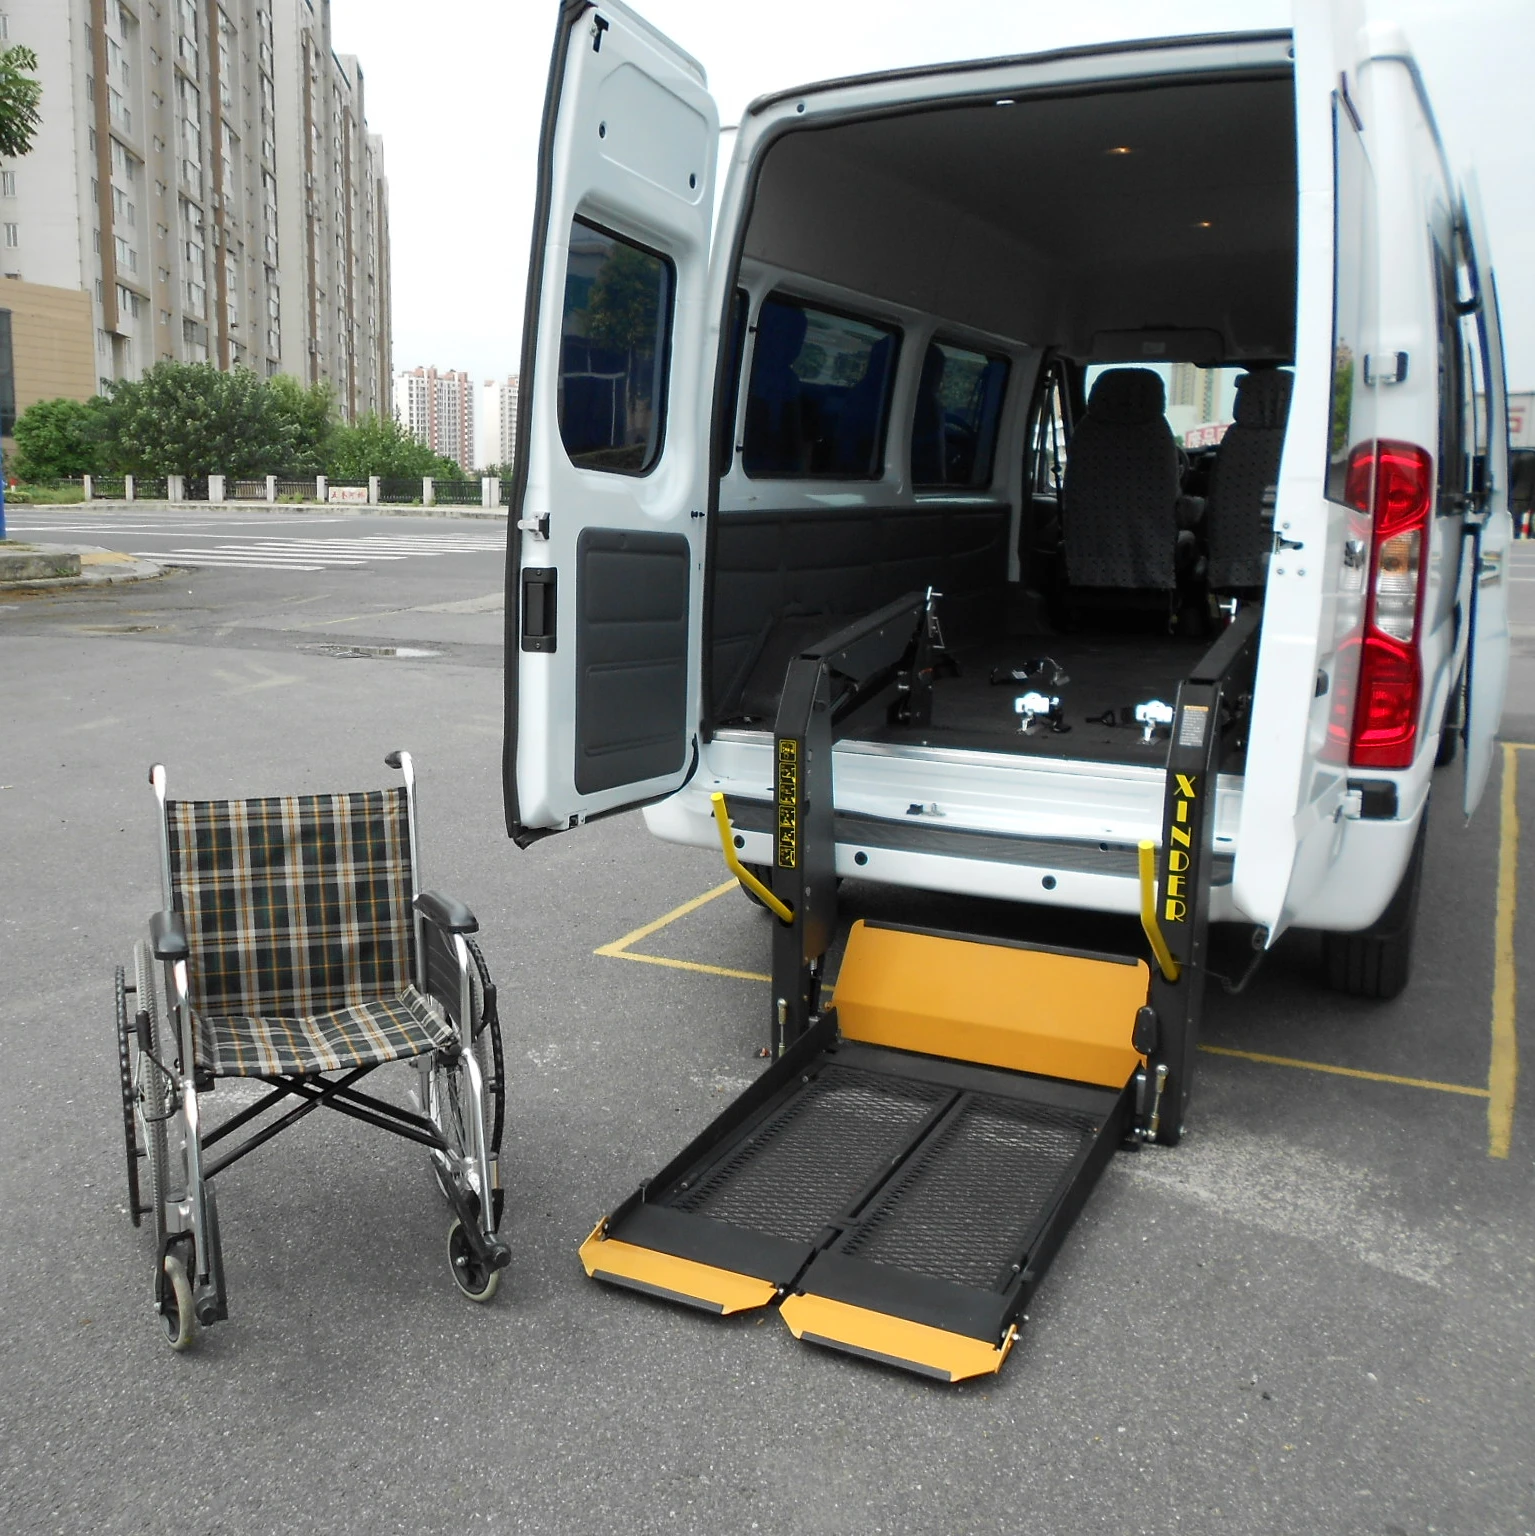 Перевозка инвалидов medportal. Dhollandia ef0512 подъемник для инвалидов. Ricon подъёмник для инвалидов. Подъёмник для инвалидов VW t5. Пандус автомобильный для инвалидов Газель.